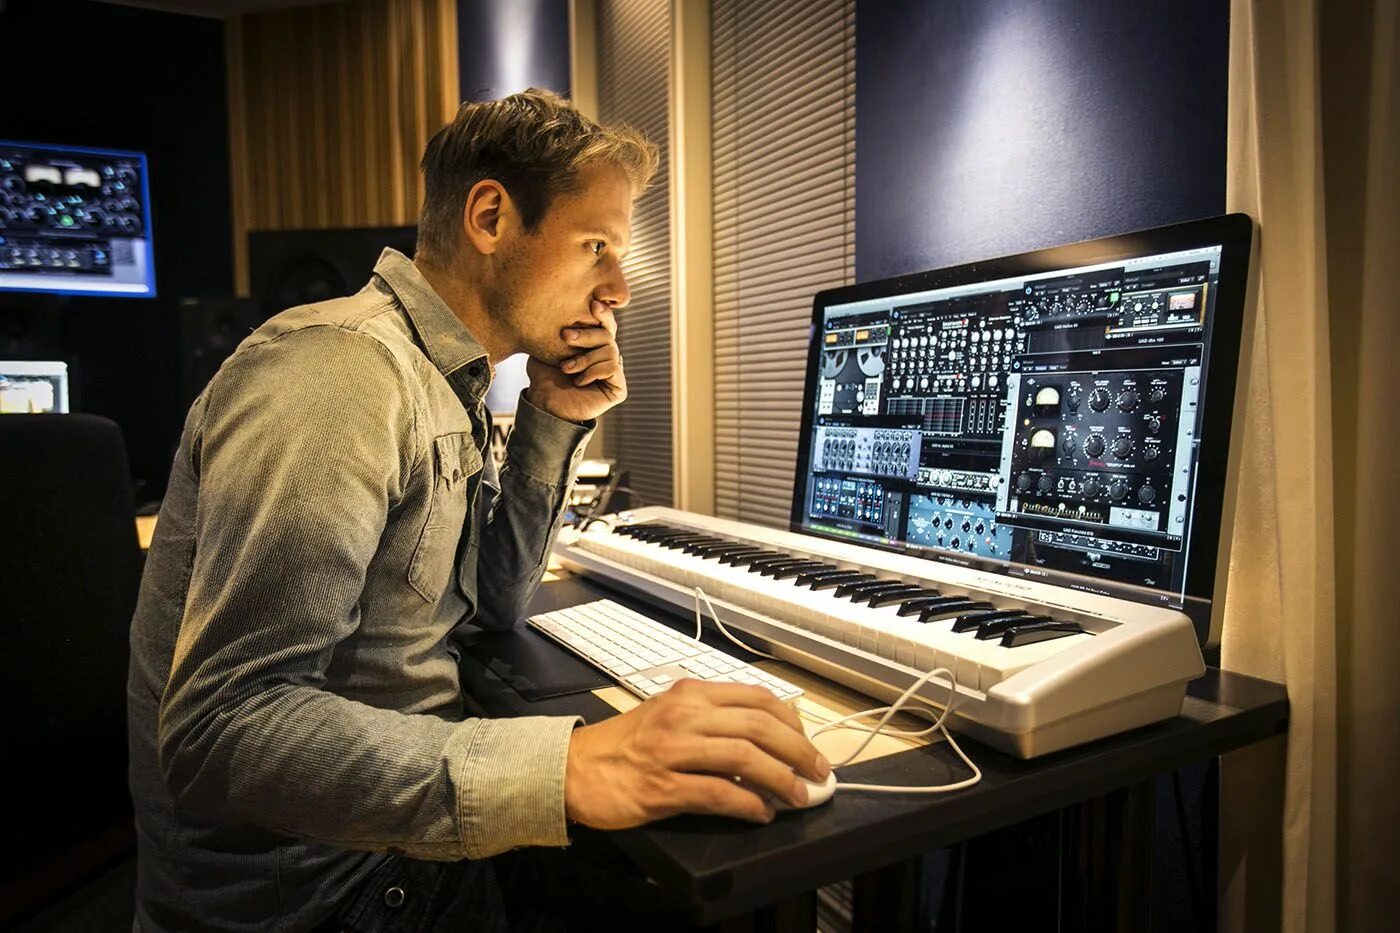 В каком стиле музыки сочинял. Студия Армина Ван Бюрена. Armin van Buuren в студии. Армин музыкант. Студия композитора.